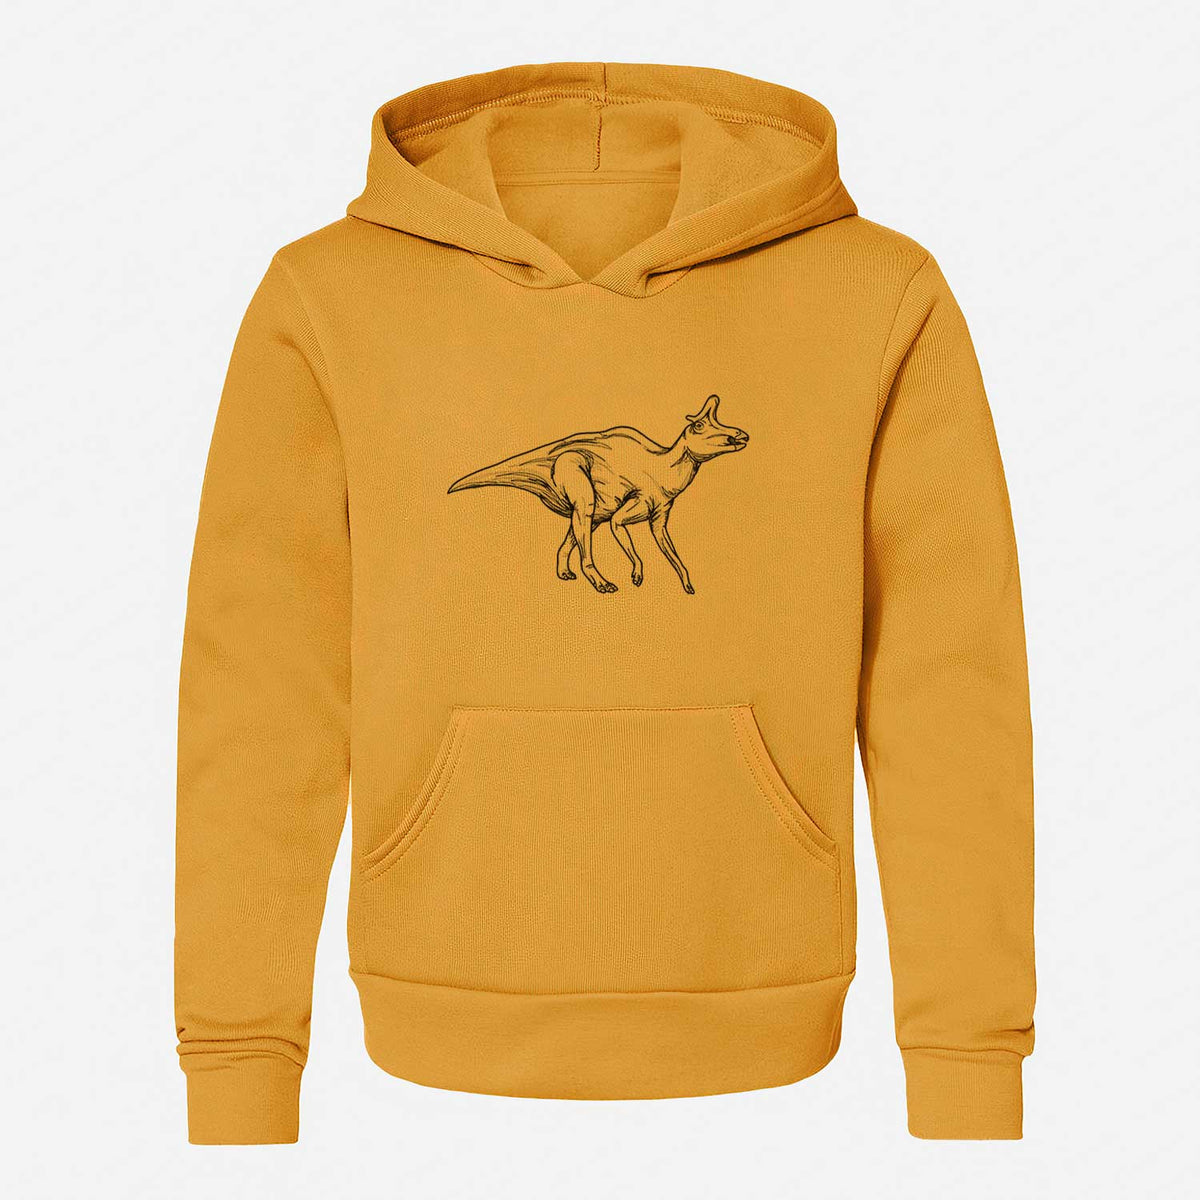 Lambeosaurus Lambei - Youth Hoodie Sweatshirt